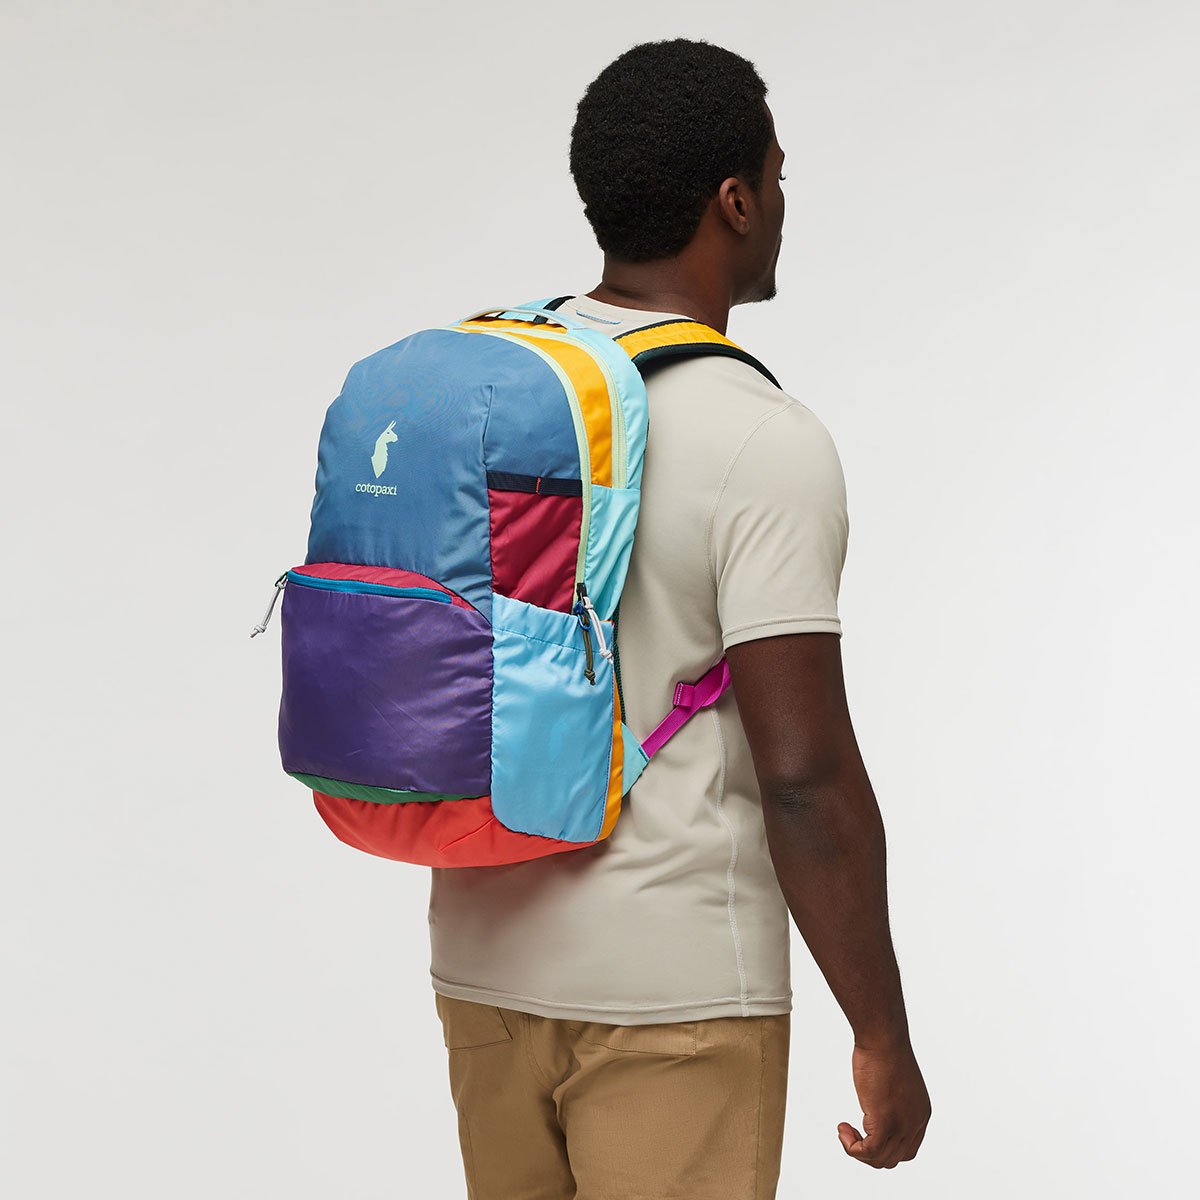 Chiquillo 30L Backpack - Del Día